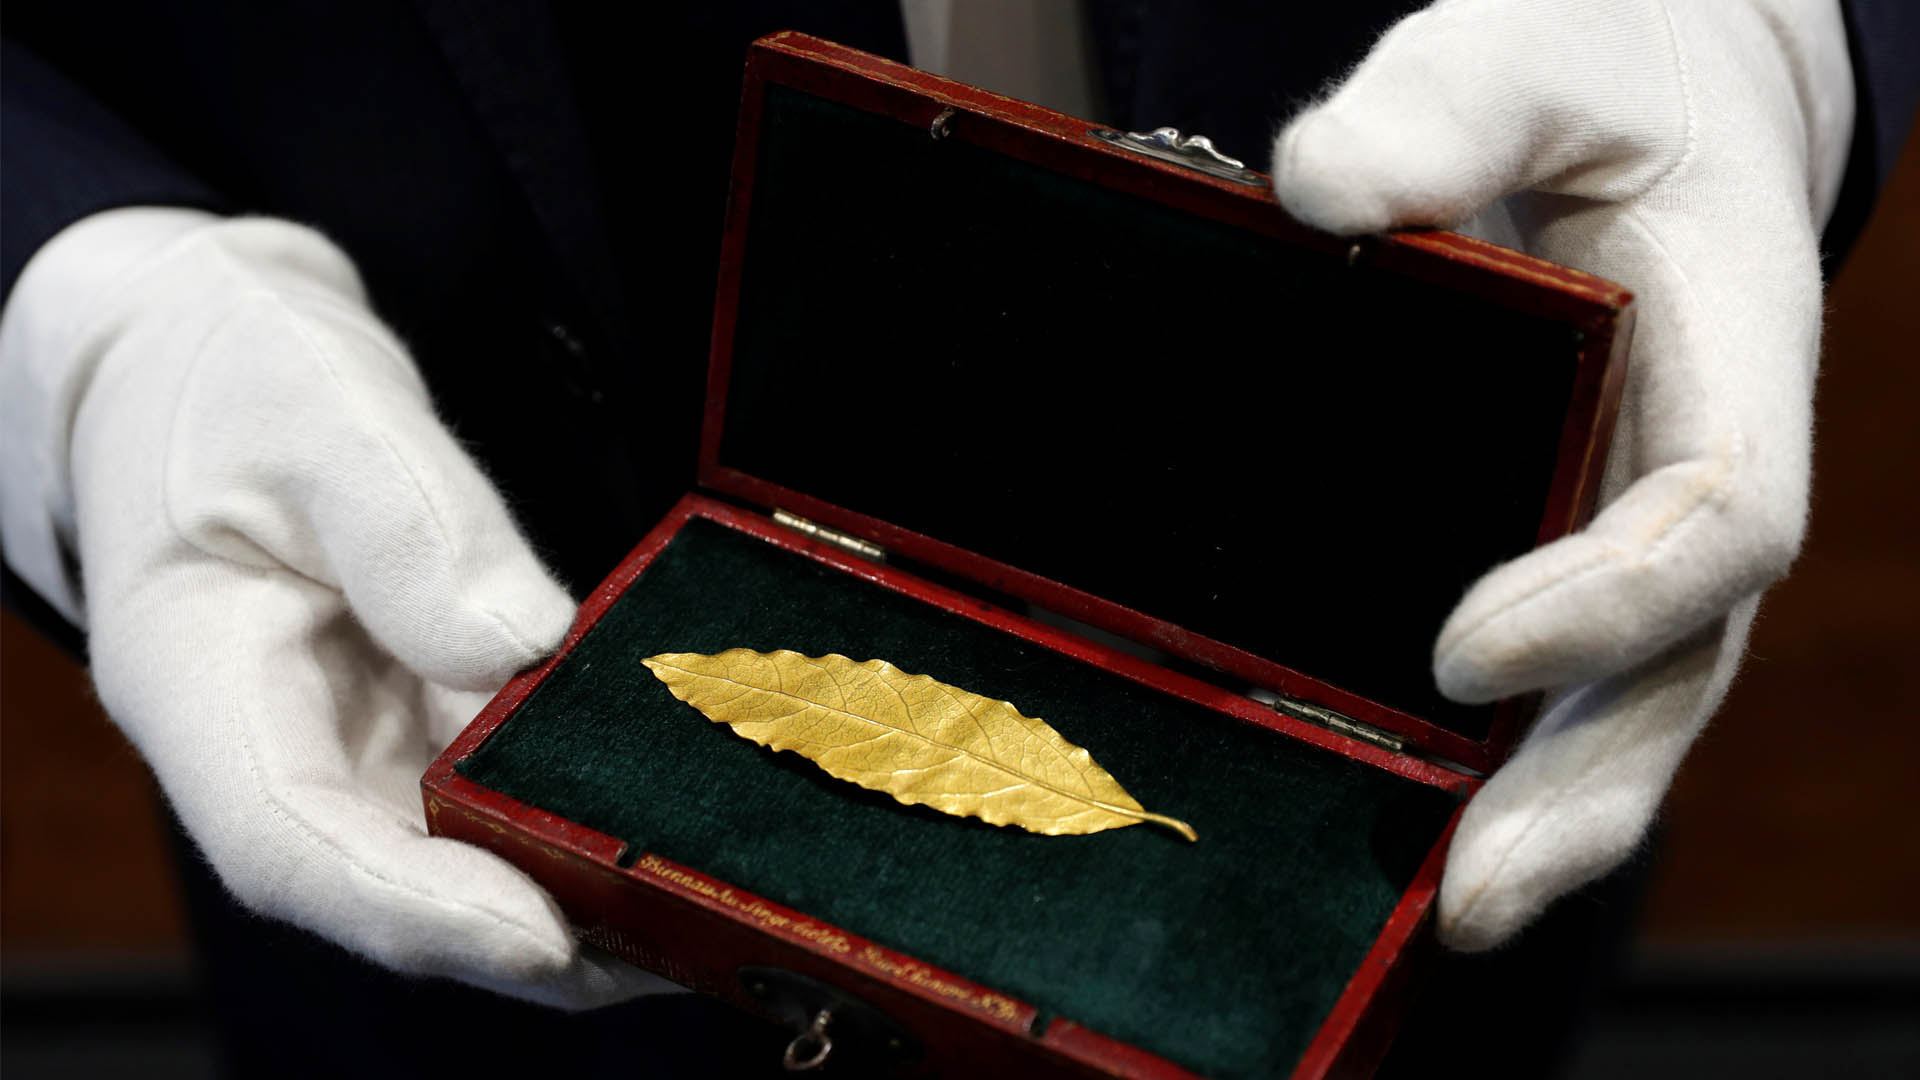 Adjudicada por 500.000 euros una hoja de oro de la corona de Napoleón